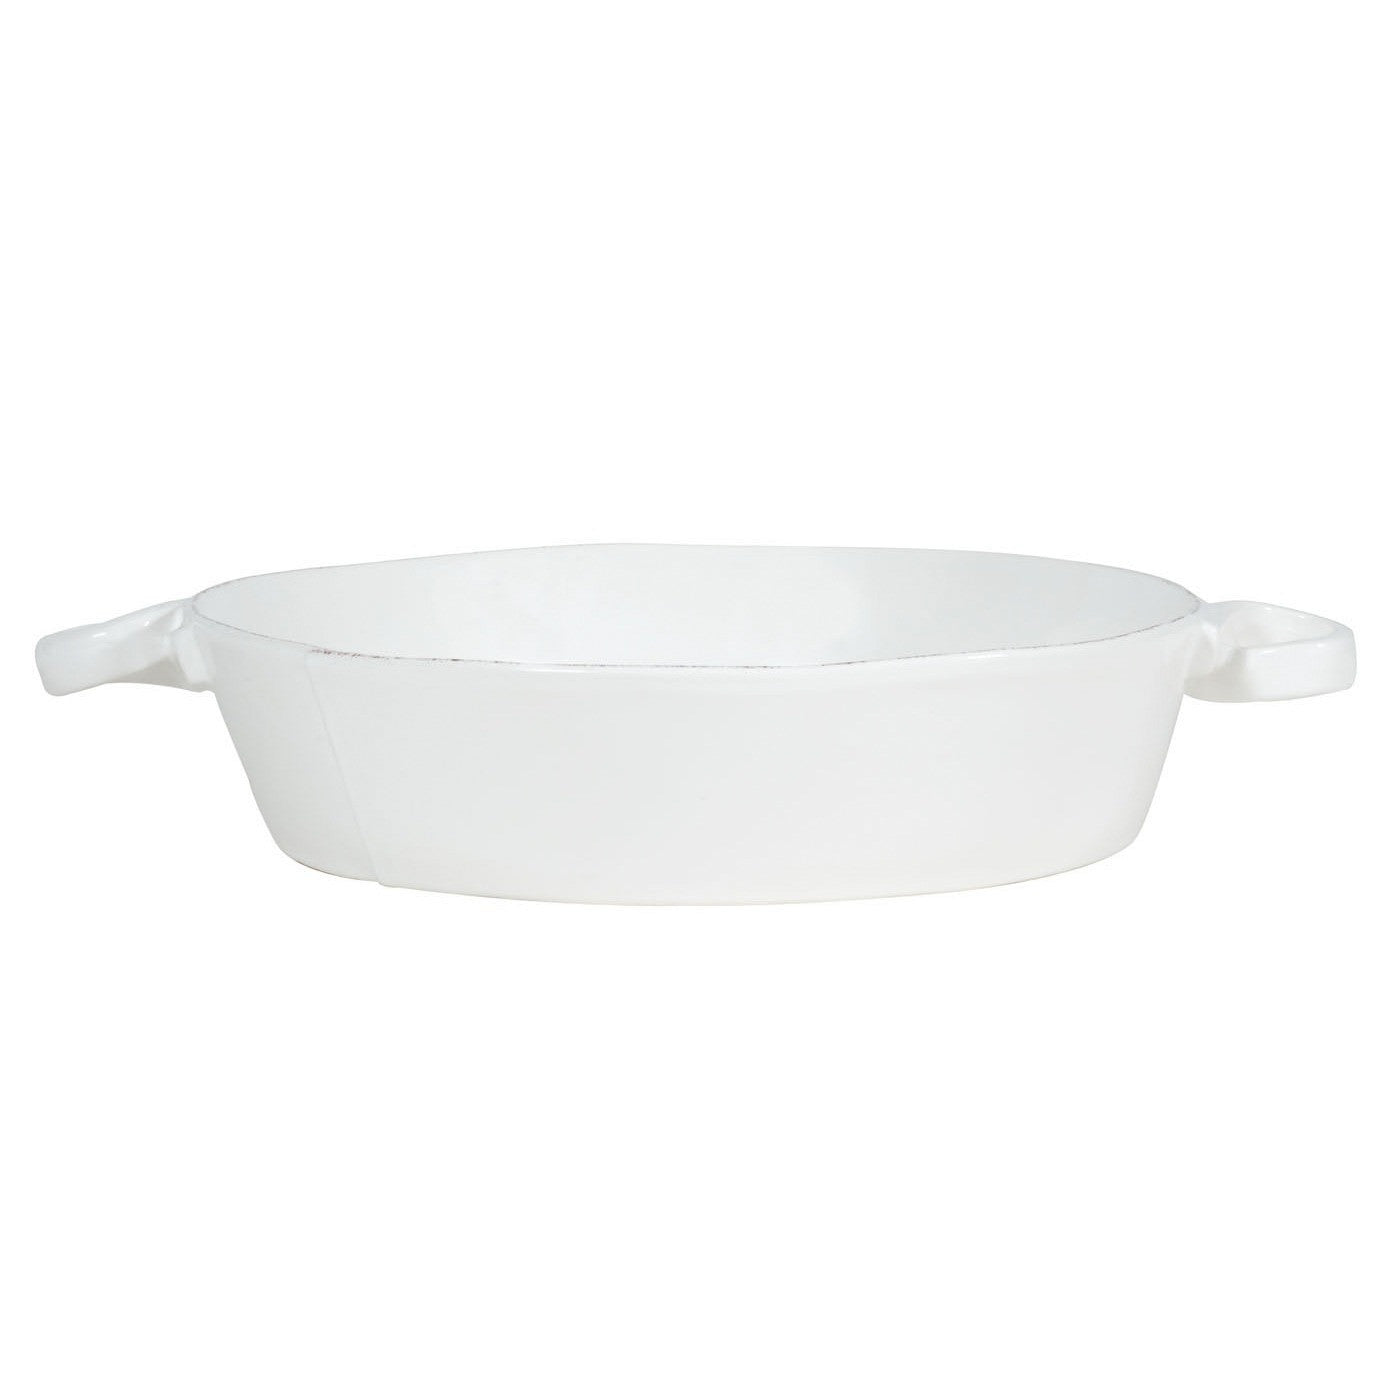 VIETRI: Lastra White Handled Round Baker - Artistica.com